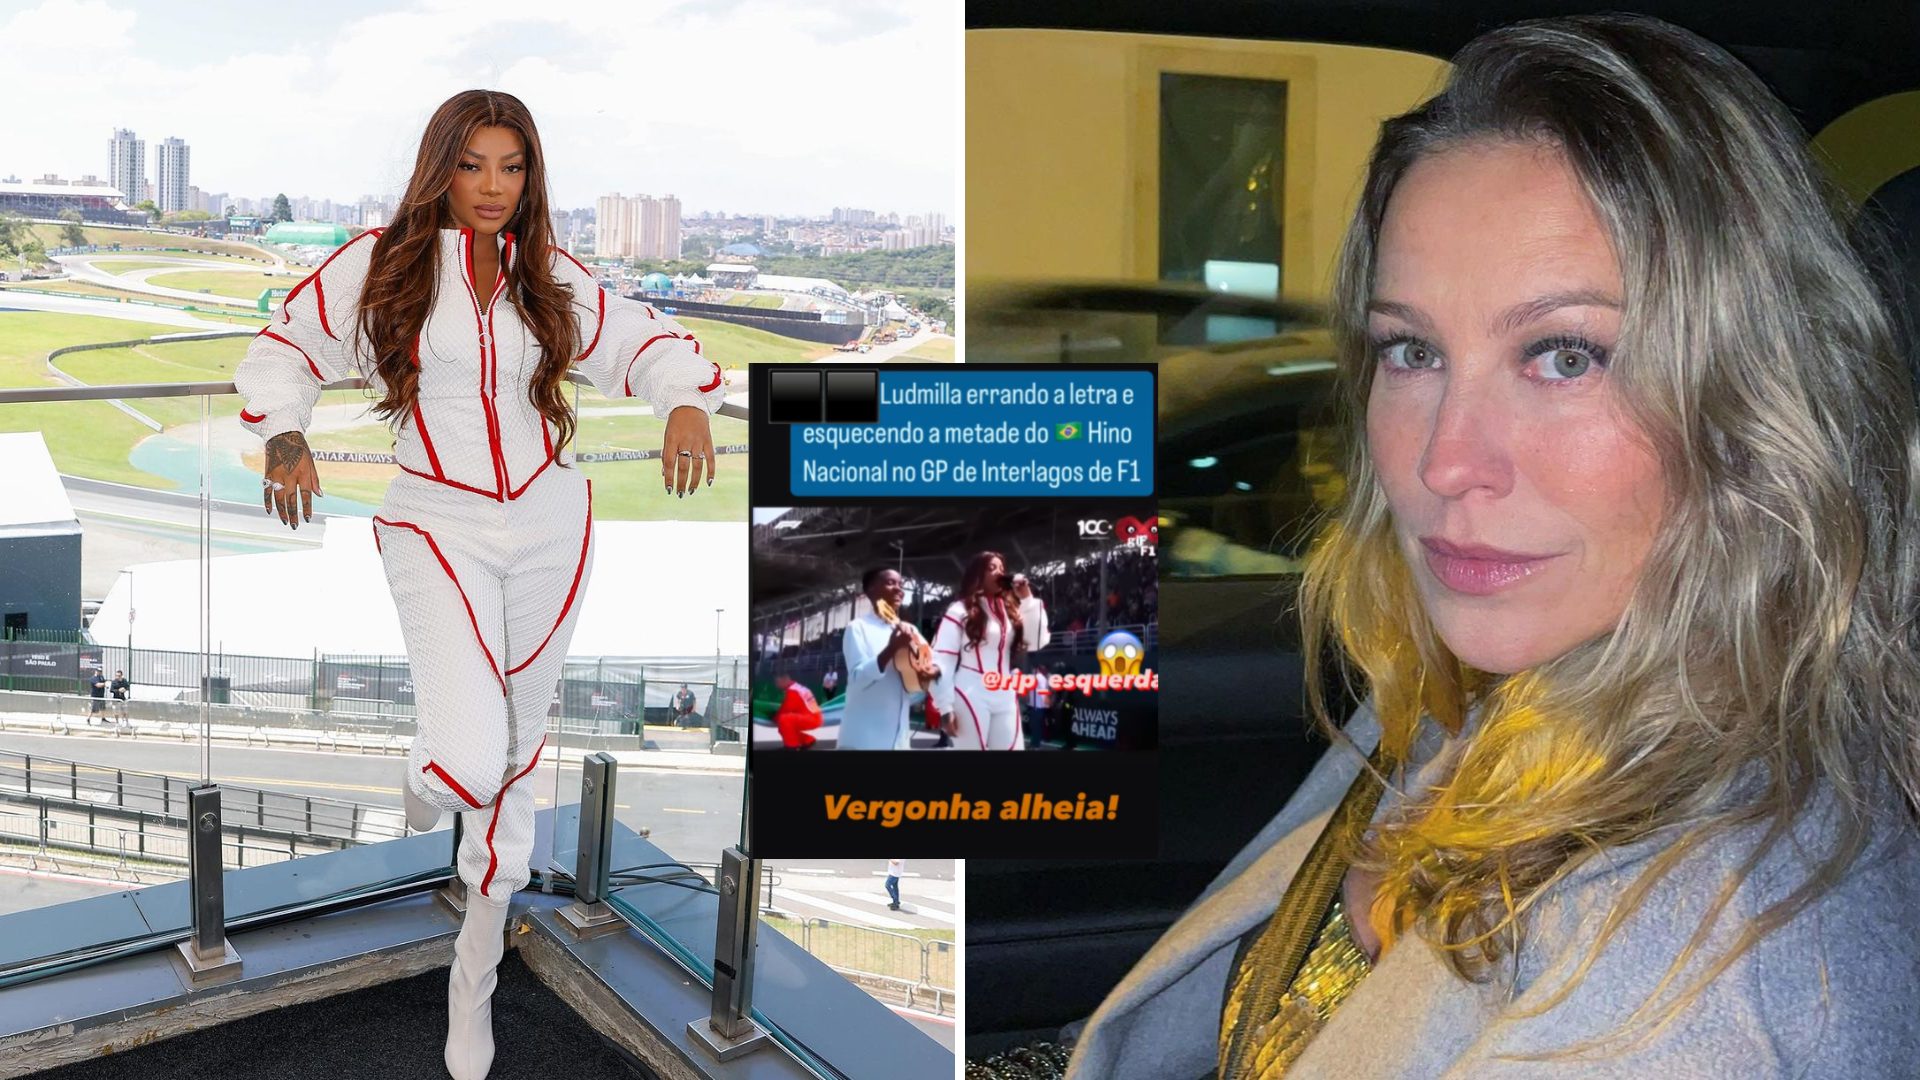 Luana Piovani acaba com Ludmilla por causa do hino nacional: “Vergonha  alheia”